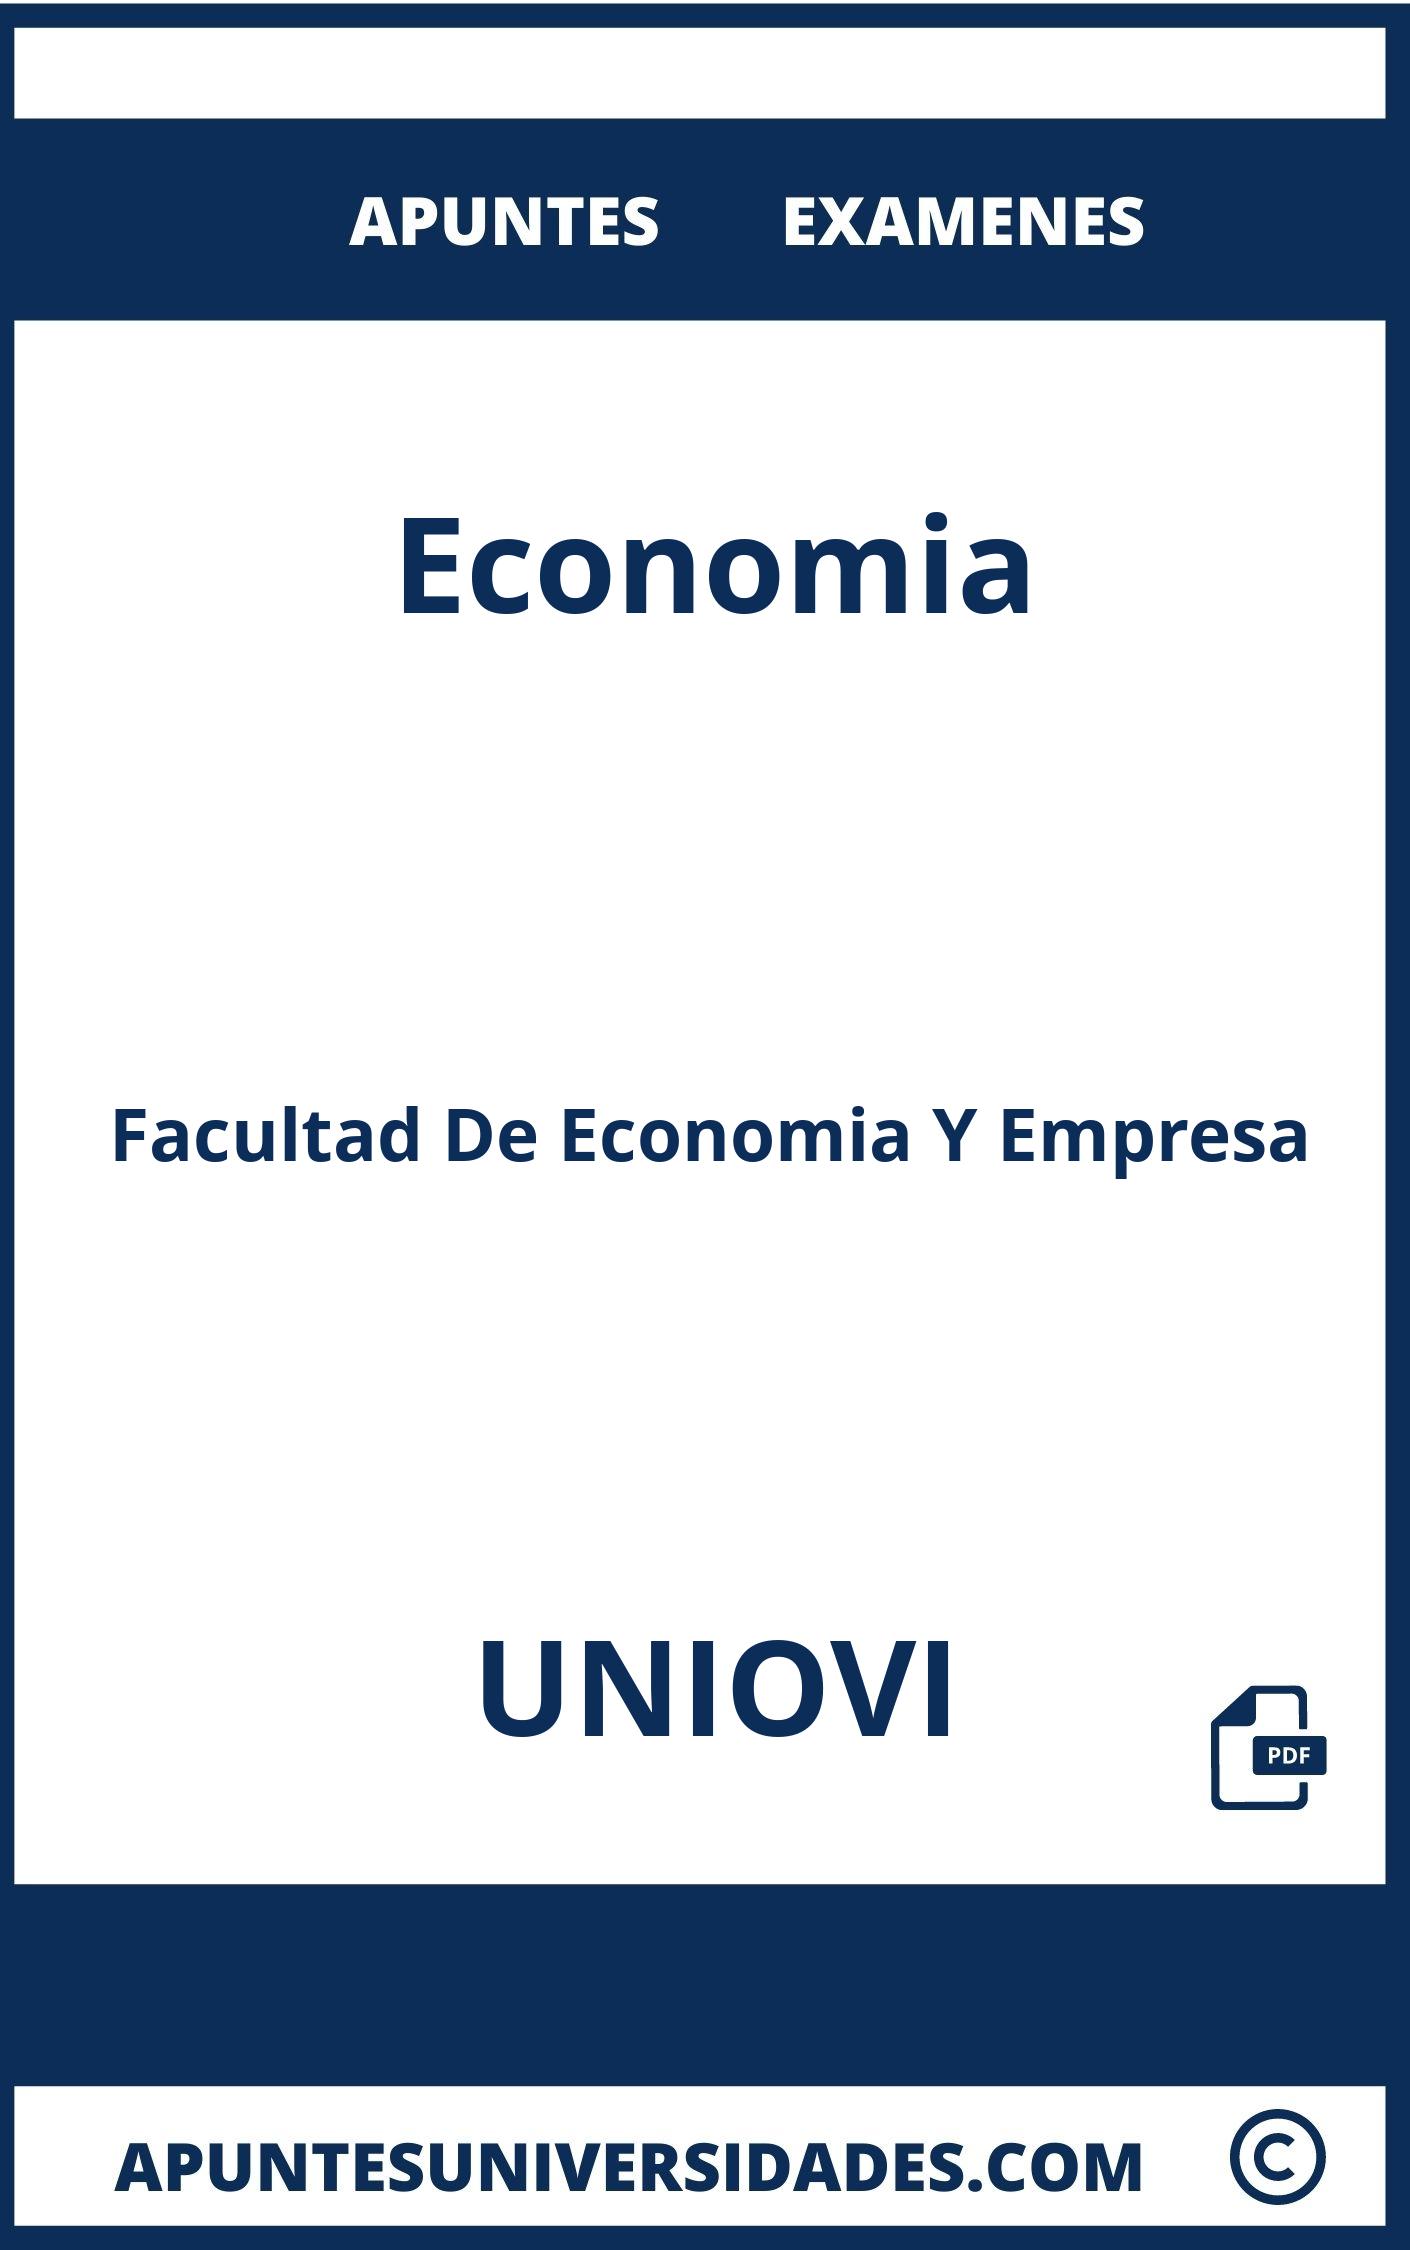 Examenes y Apuntes de Economia UNIOVI